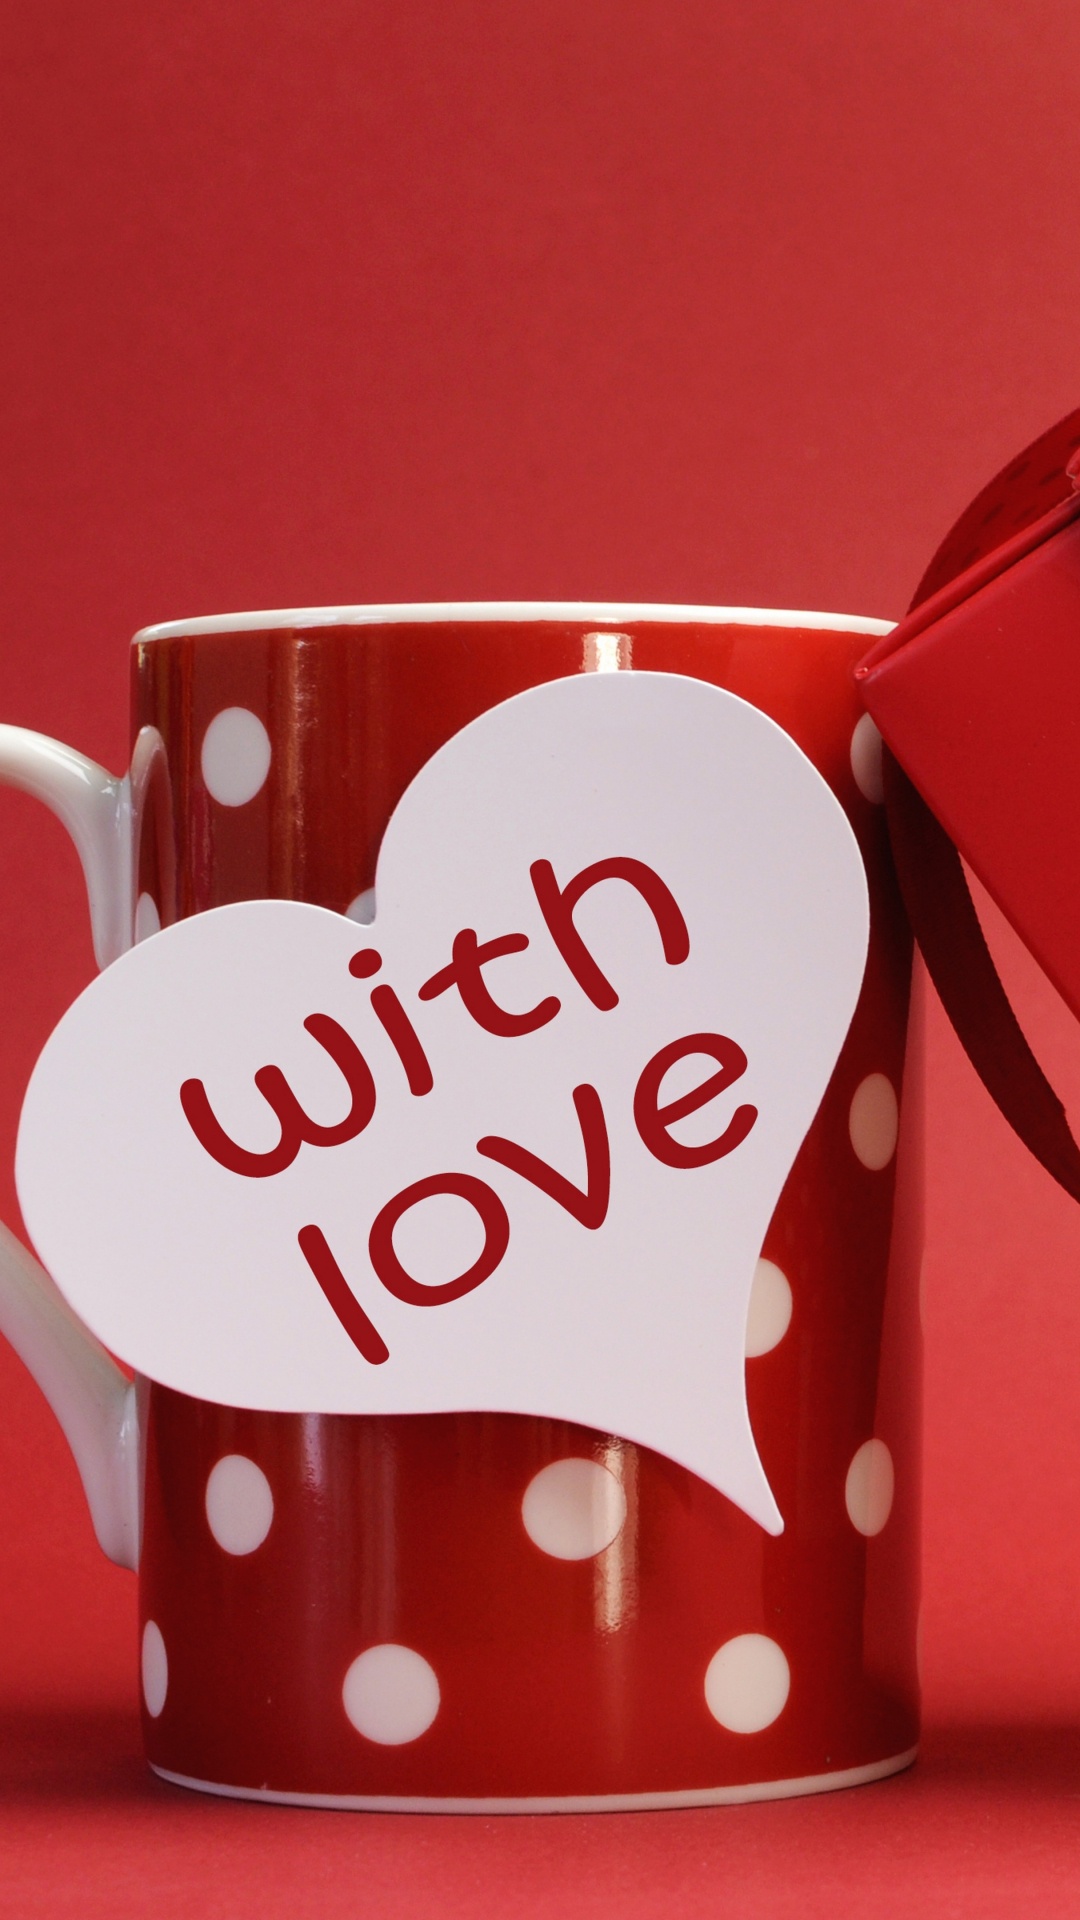 浪漫, 心脏, 爱情, 咖啡杯, 假日 壁纸 1080x1920 允许